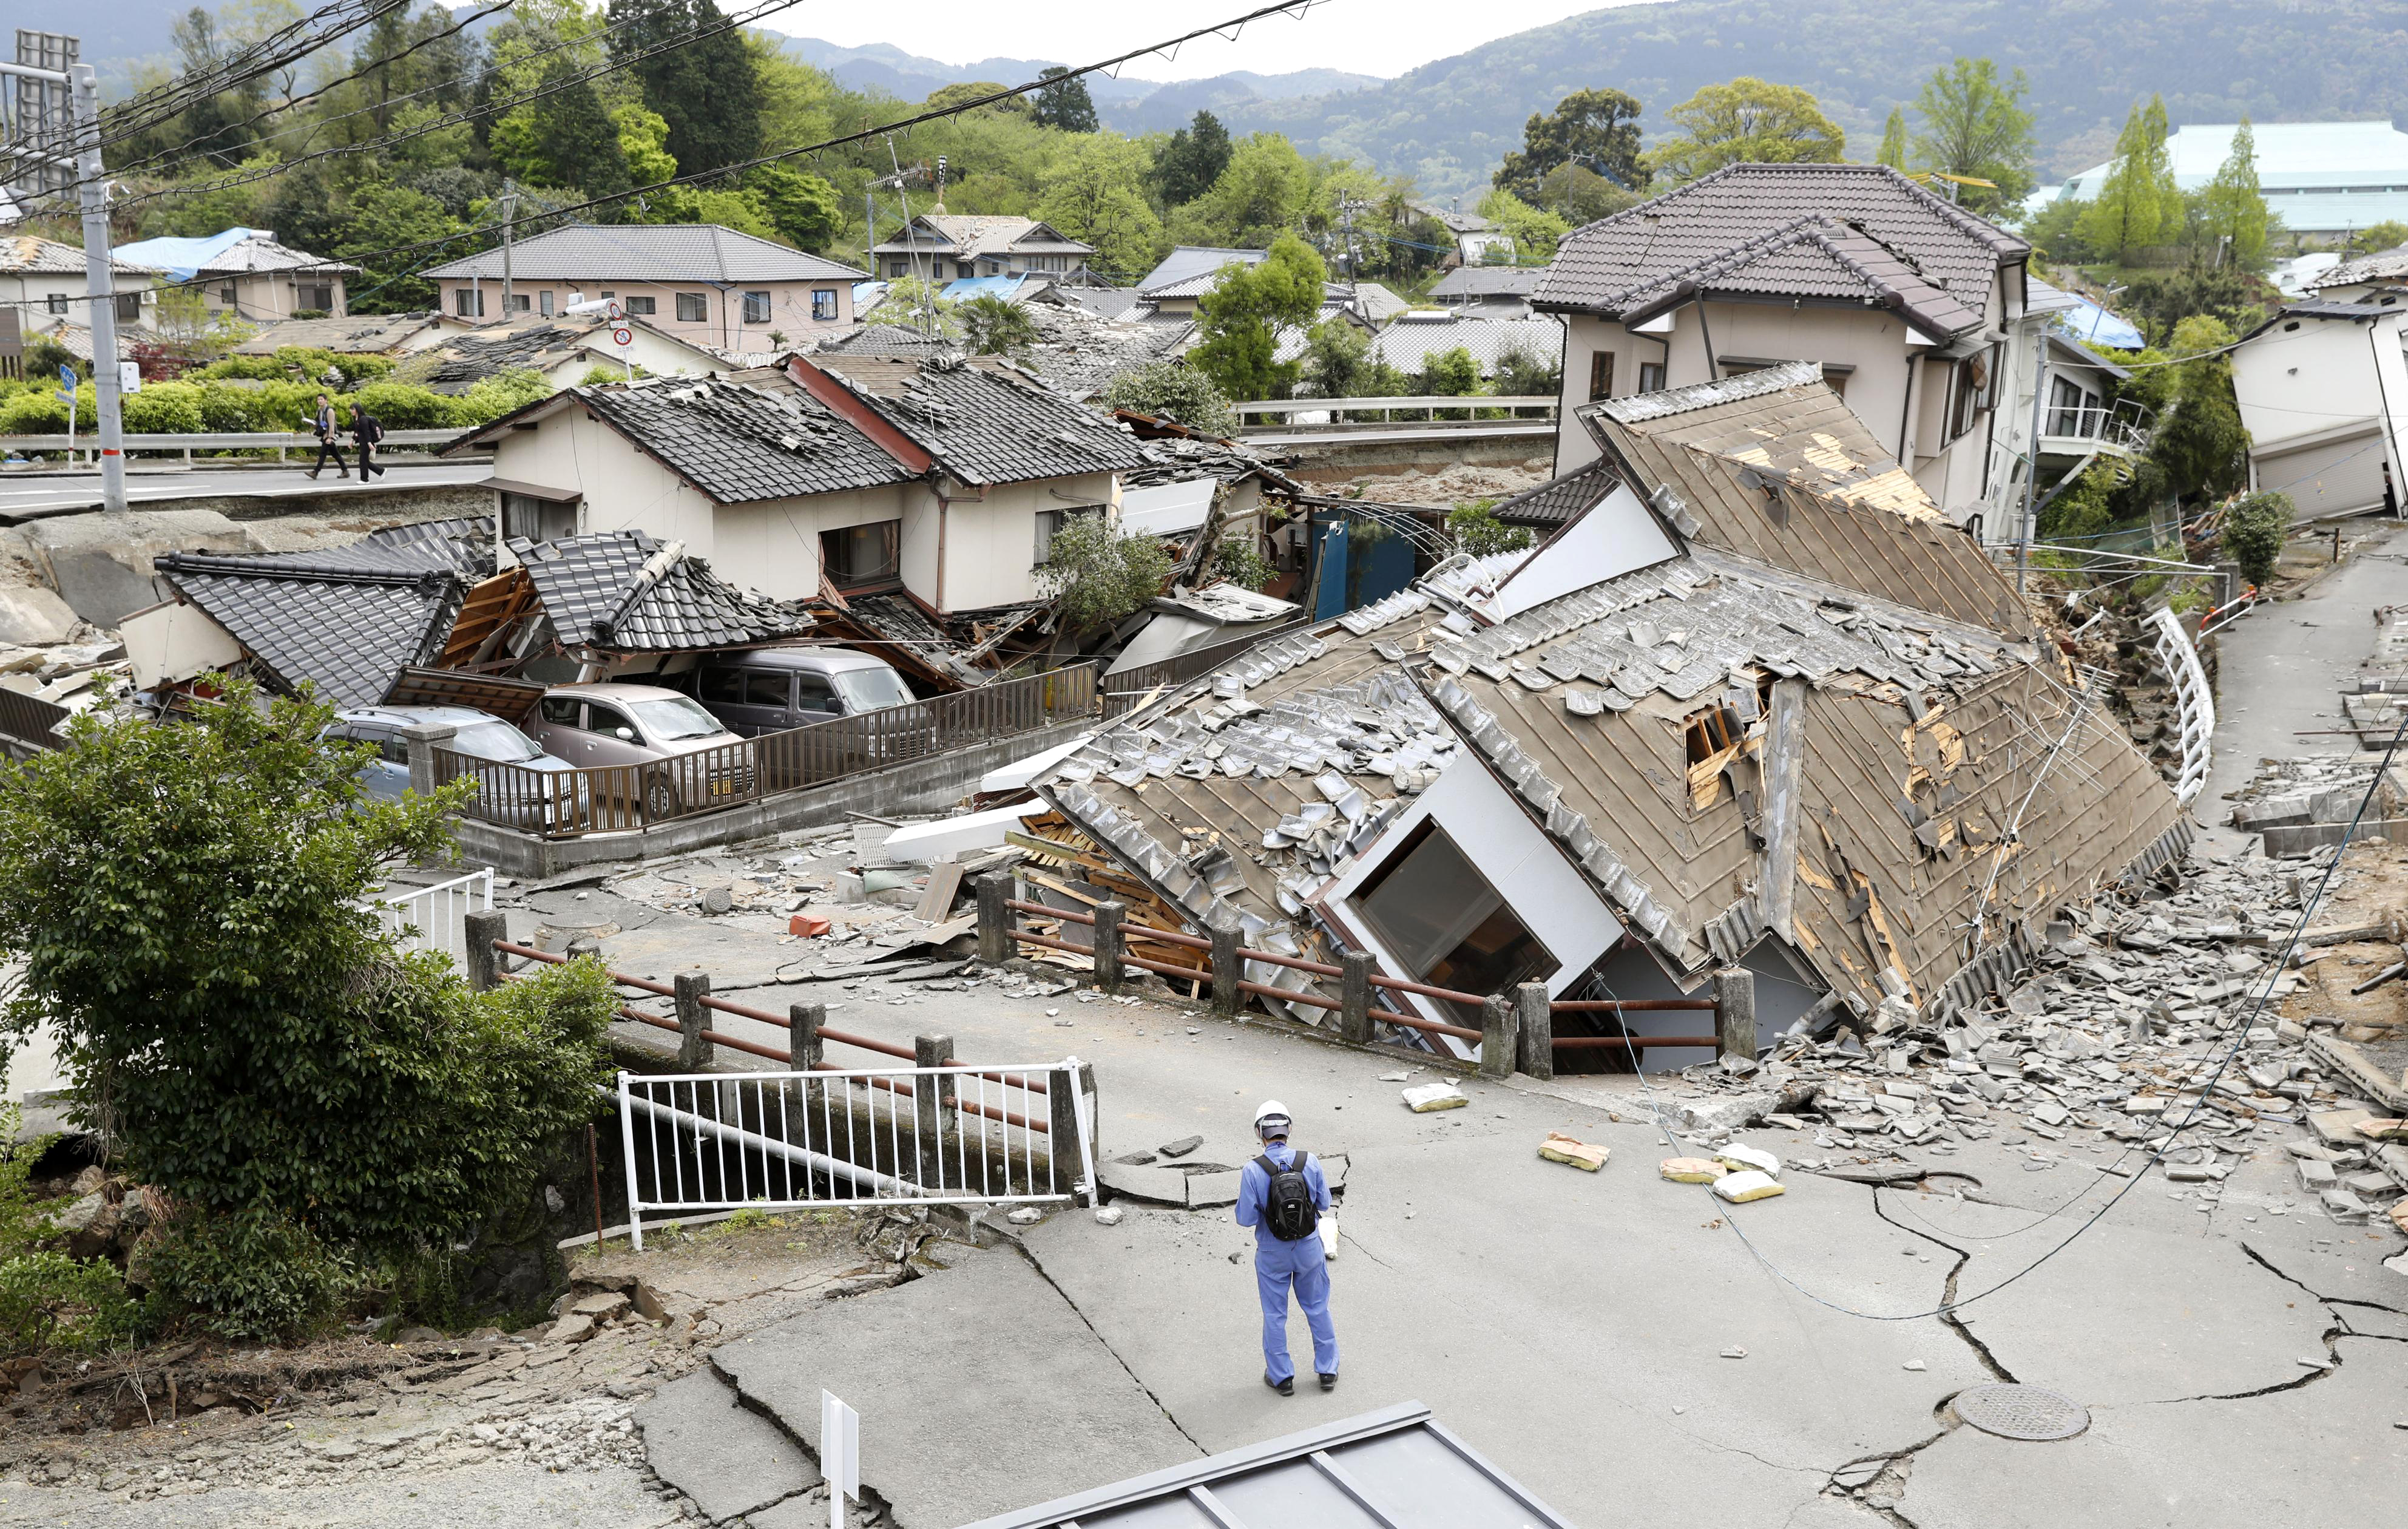 Фотографии землетрясений. Землетрясение в Японии 2023. Катманду после землетрясения. Землетрясение Кюсю. Зелетряс.